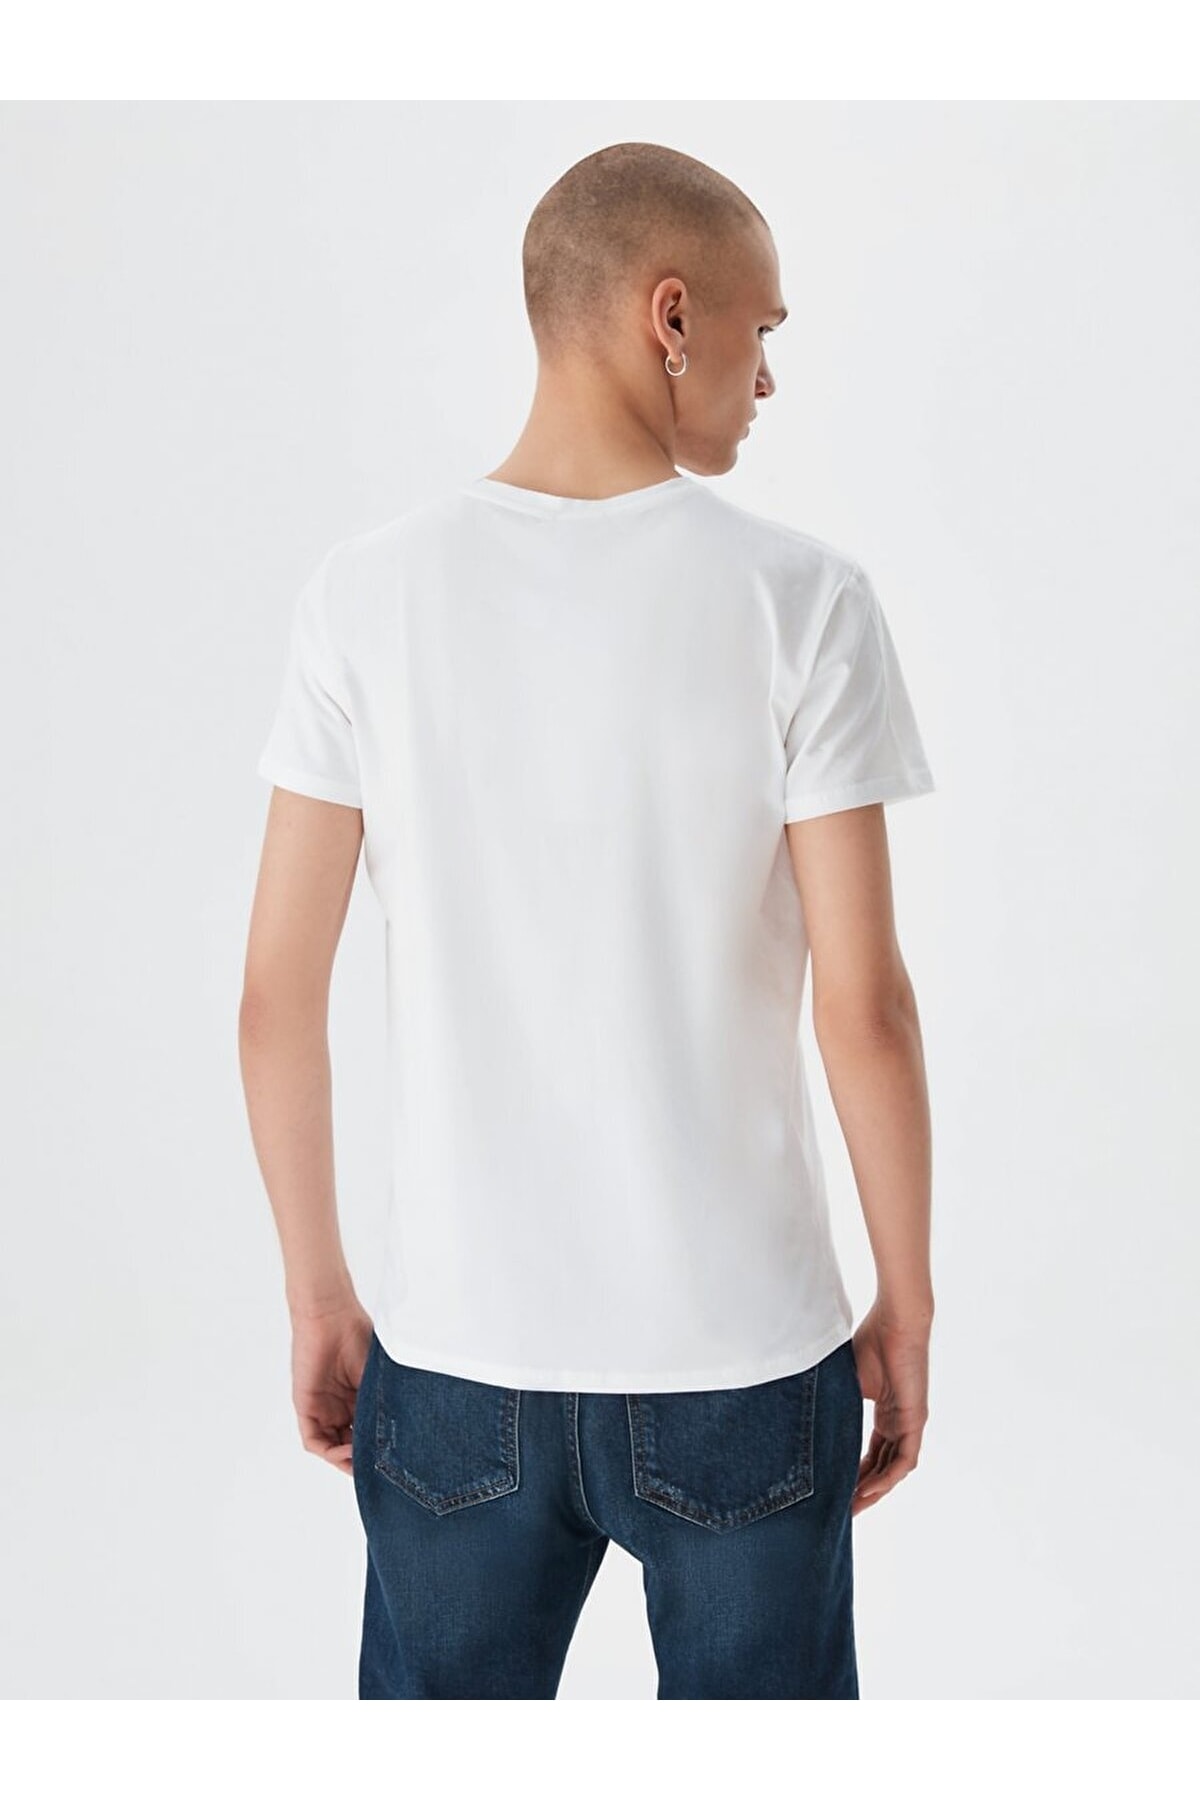 Ltb T-Shirt - White - Regular fit - Trendyol